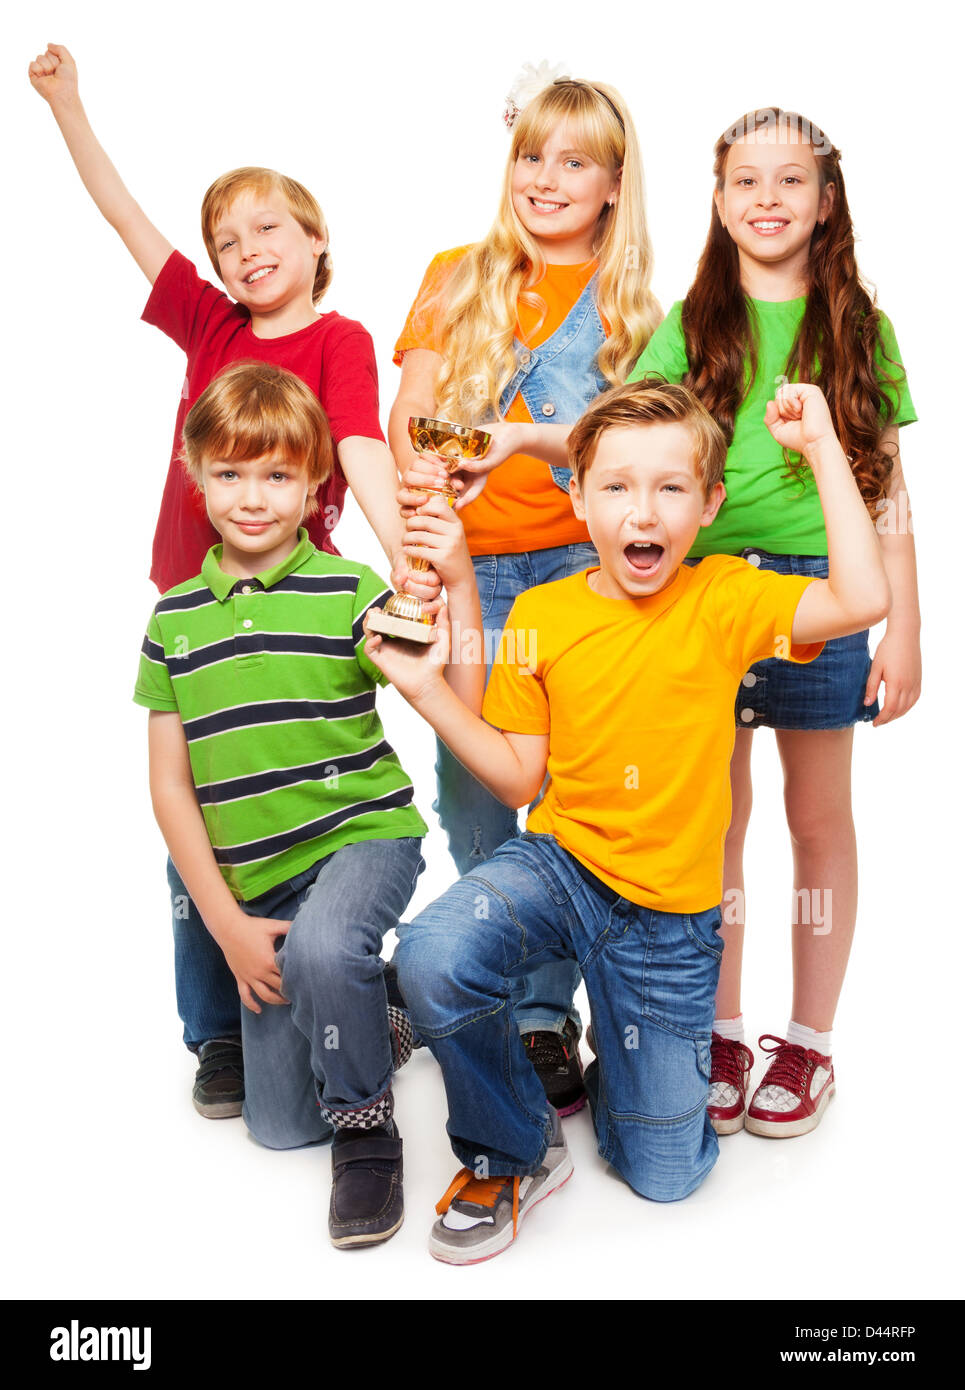 Das Siegerteam von fünf achtjährigen Jungen und Mädchen mit Schale, schreien und lachen Stockfoto